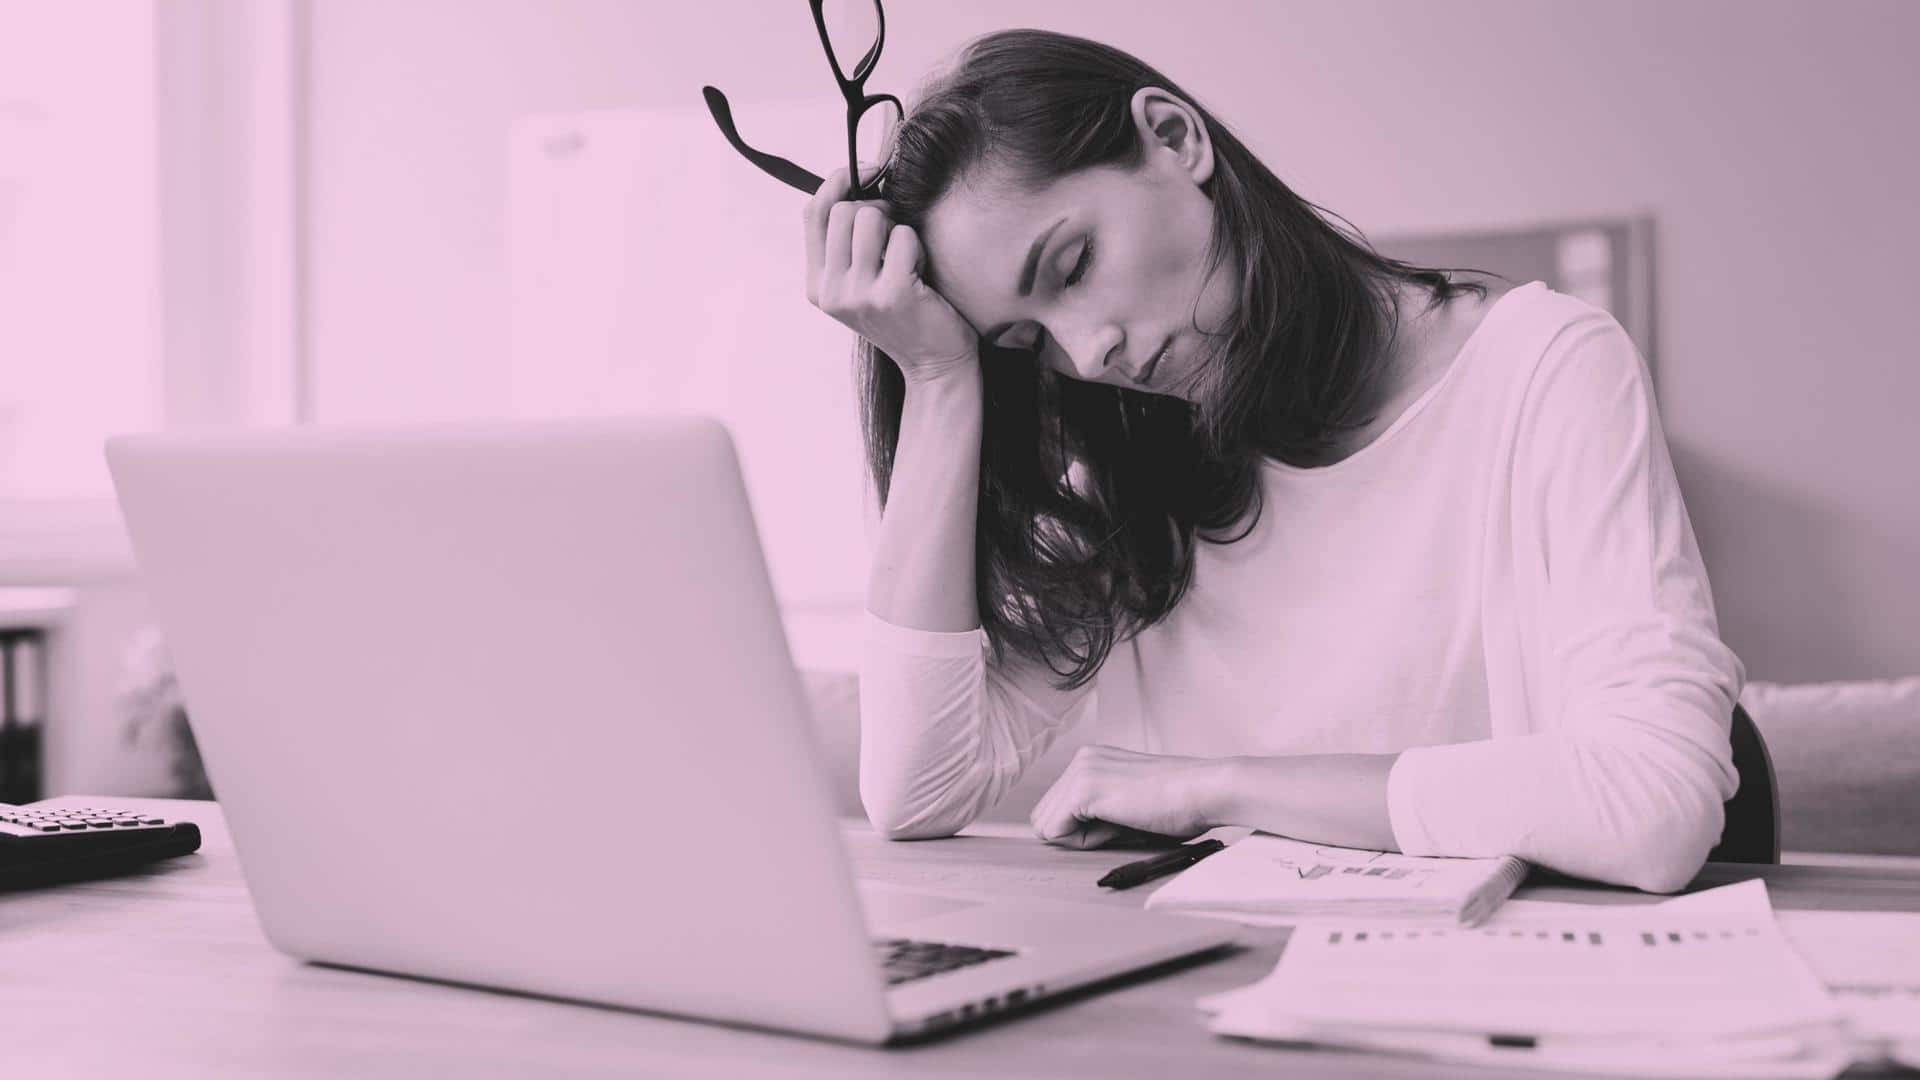 8+ hour desk job? Five must-do activities to reset